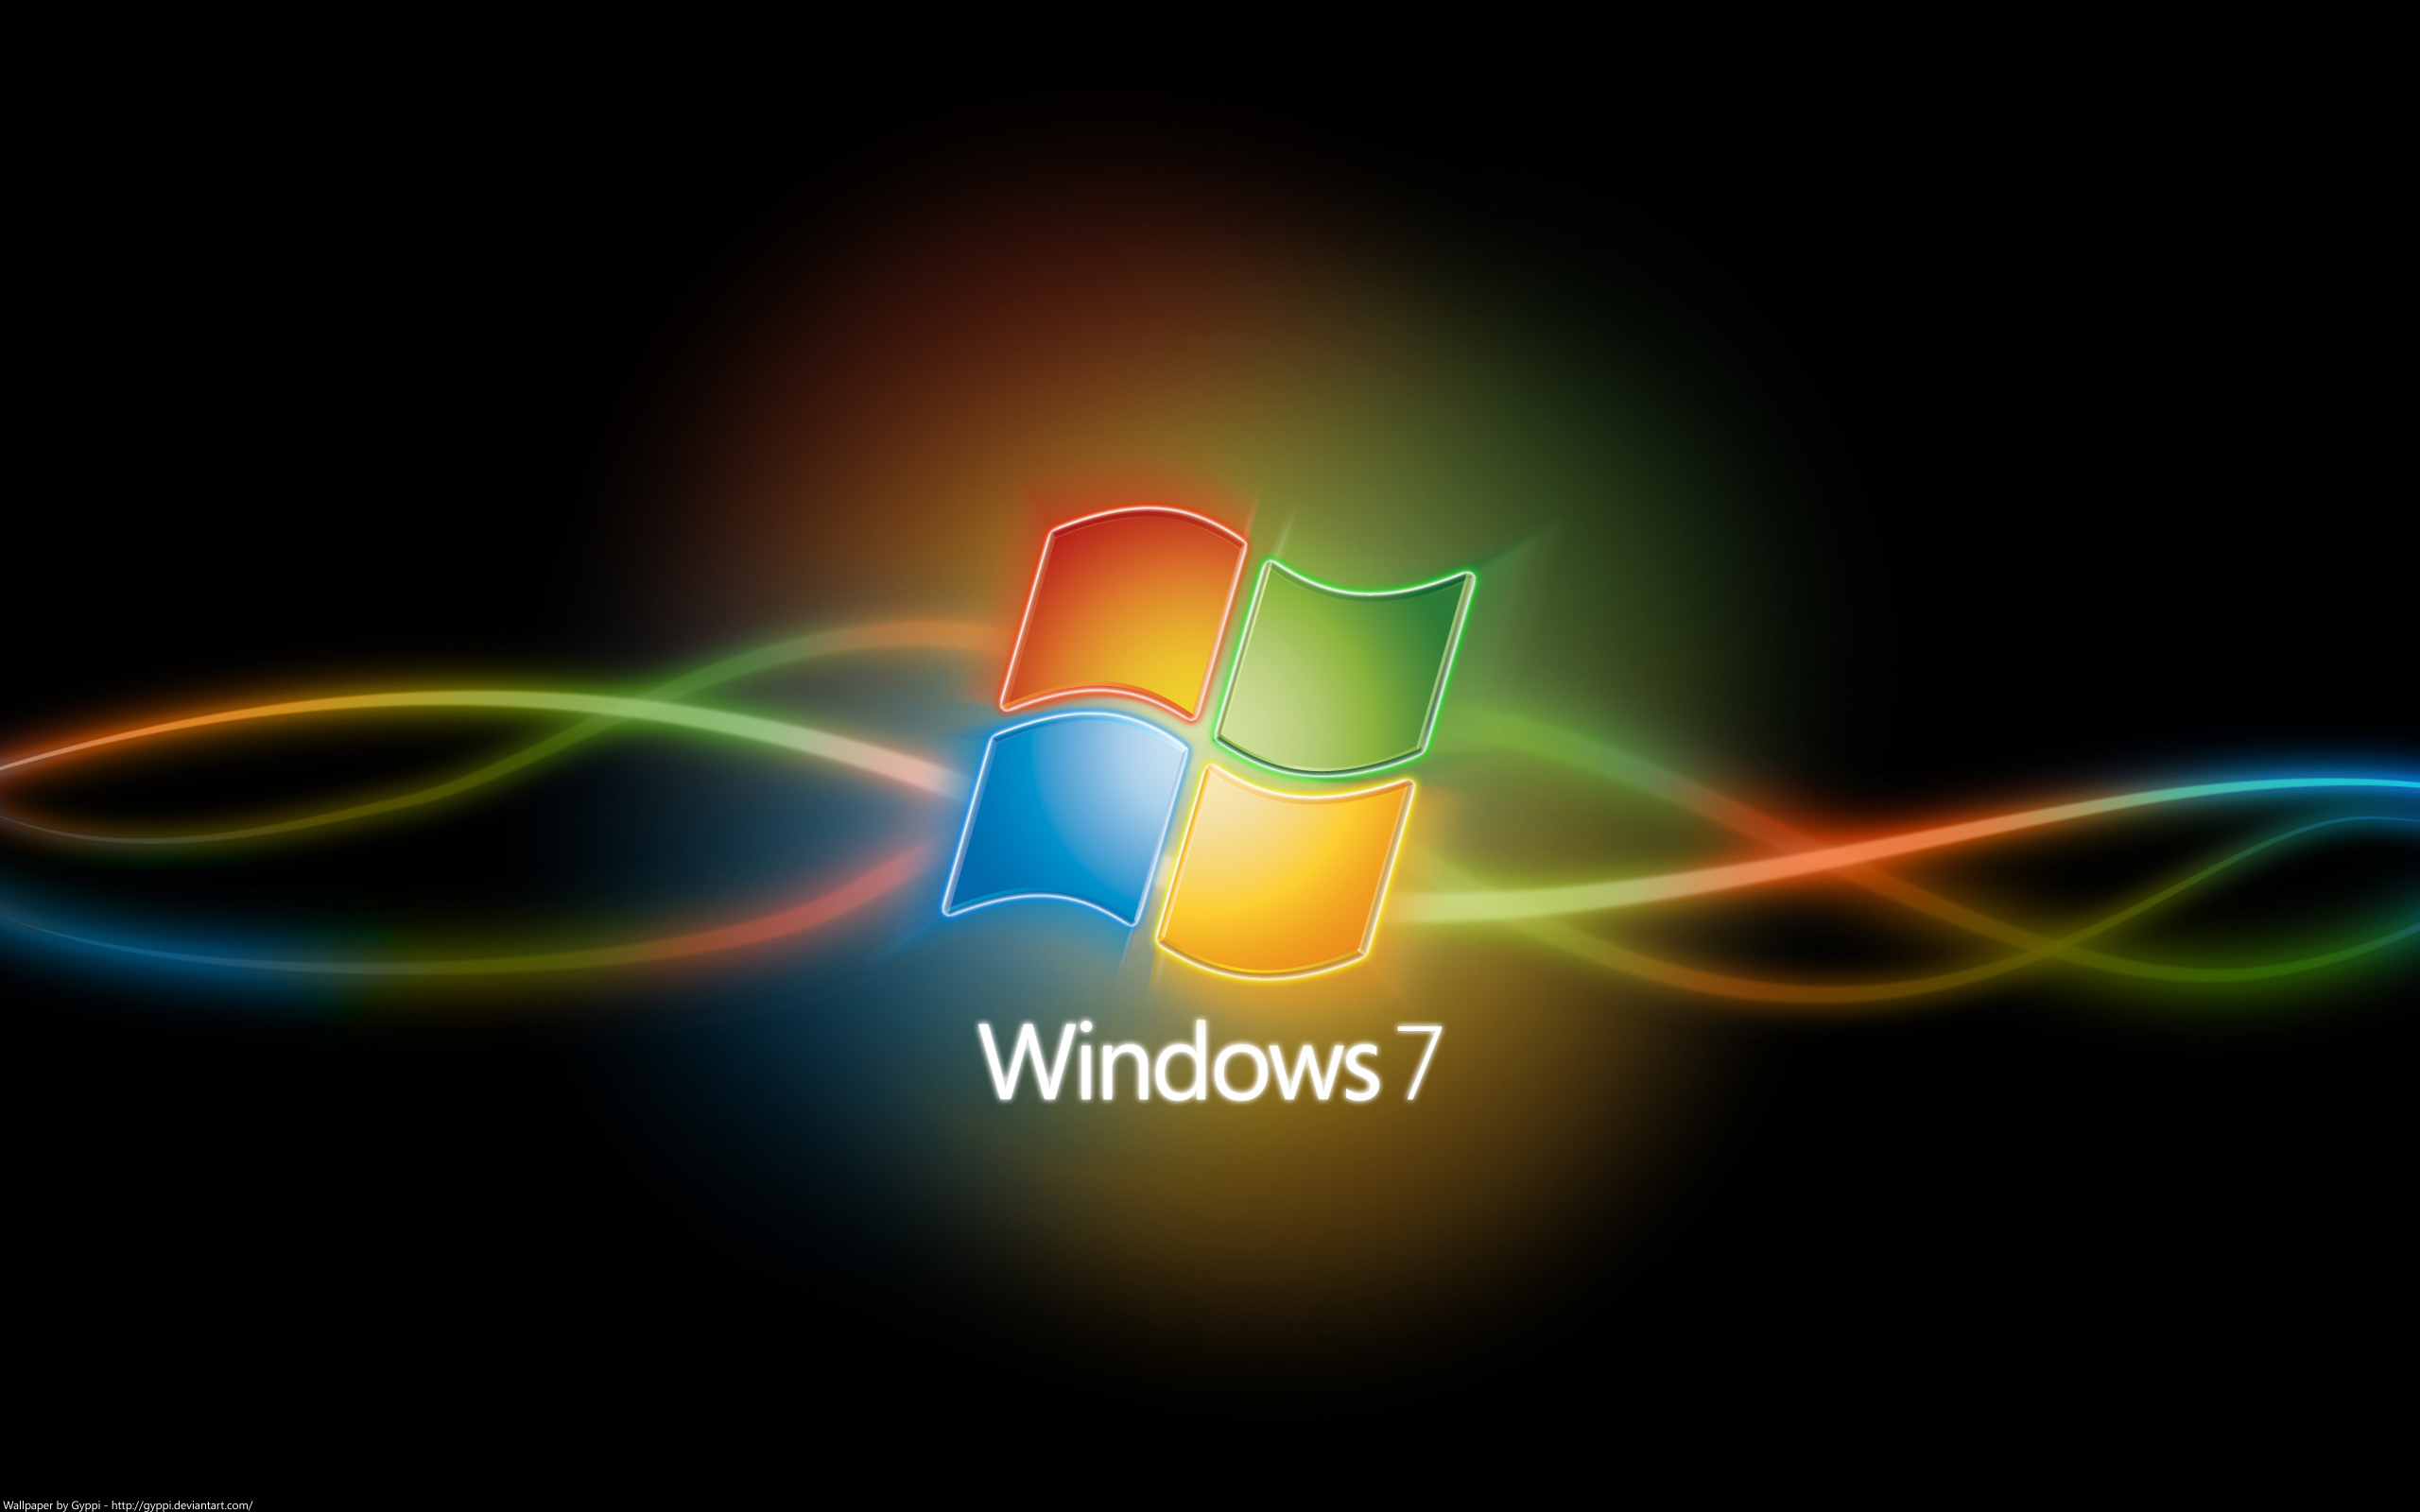 windows 7 dark wallpaper,light,text,font,colorfulness,technology